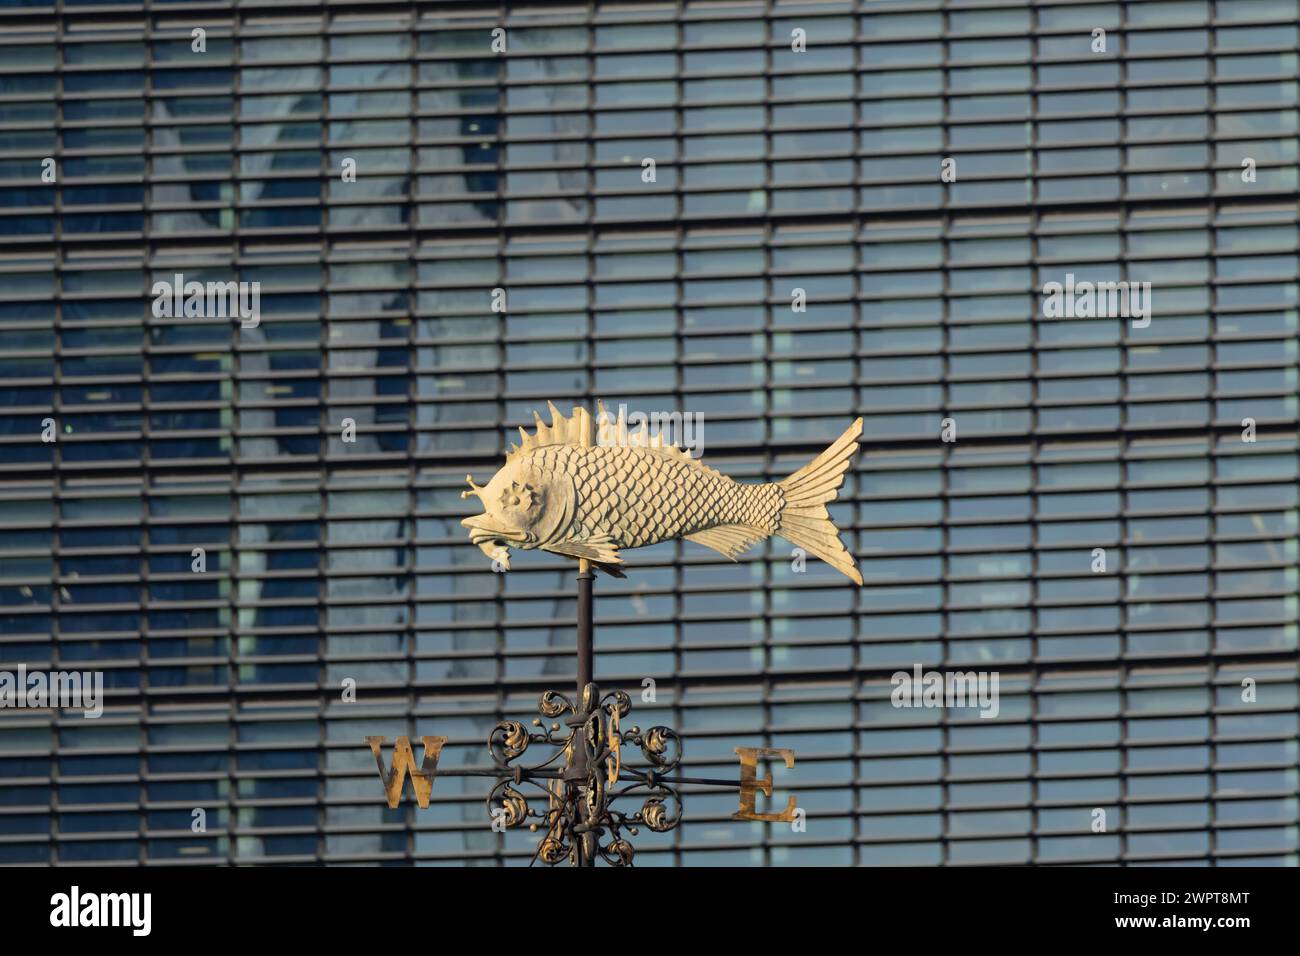 Fish Weather vain devant un immeuble de bureaux de grande hauteur, City of London, Angleterre, Royaume-Uni Banque D'Images